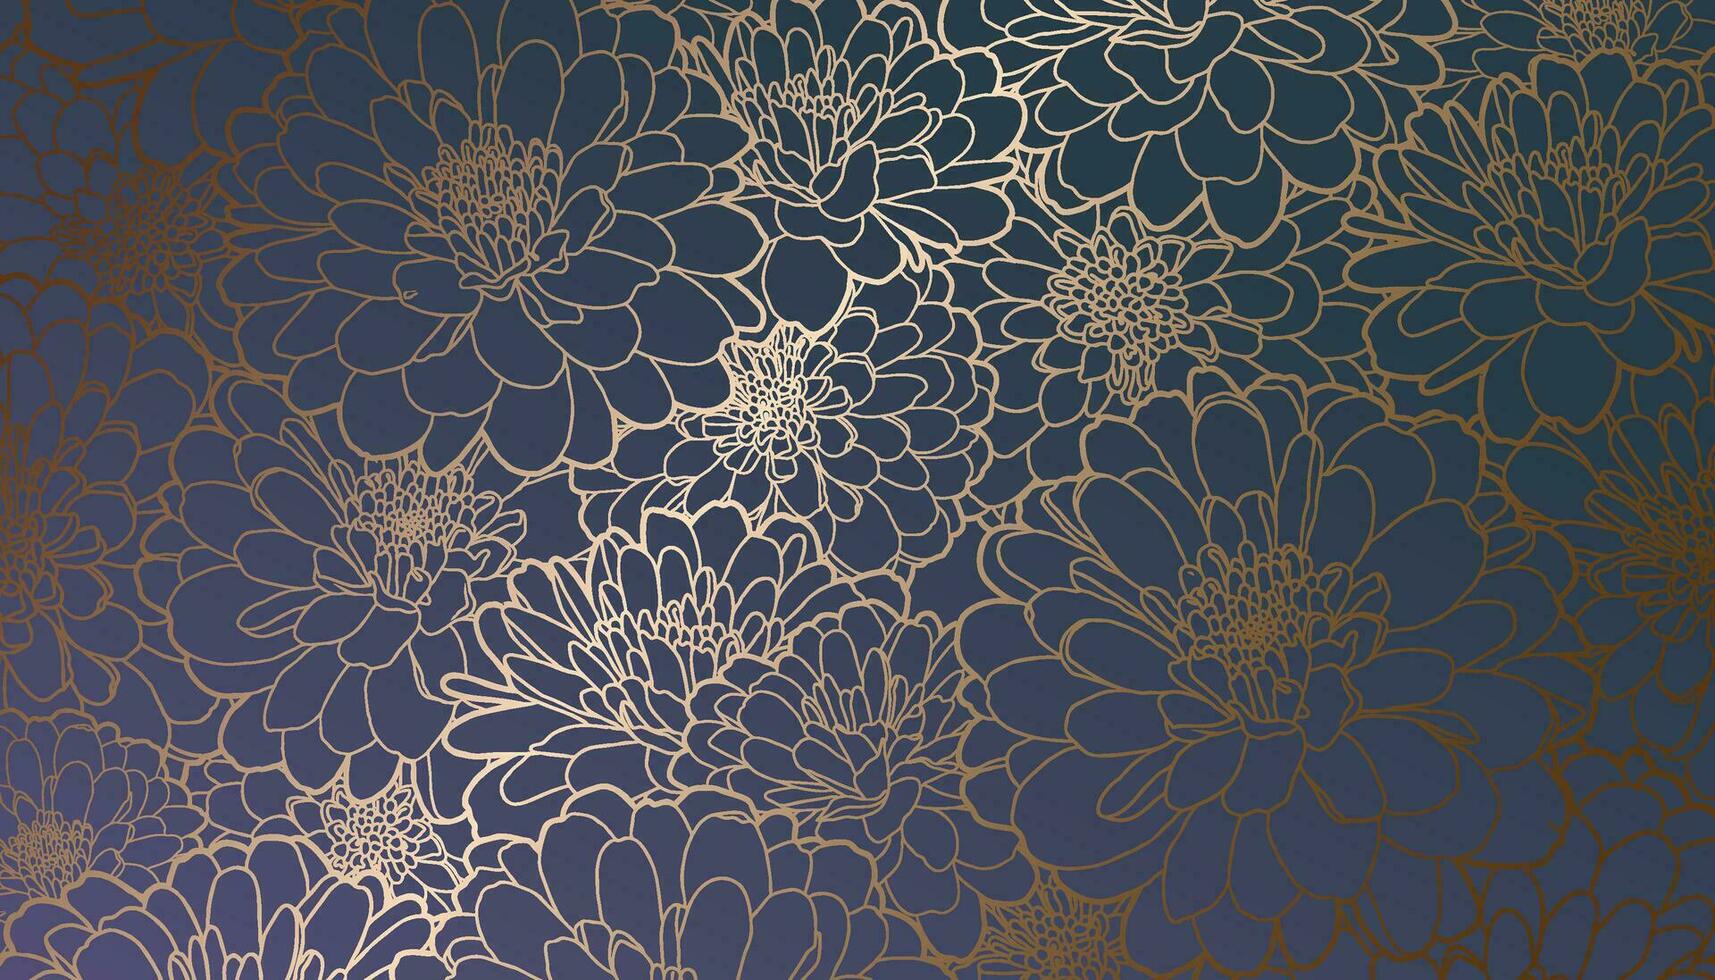 gouden metalen verijdeld contour chrysant bloemen Aan donker helling Purper blauw groen achtergrond. decoratief afdrukken voor behang, inpakken, textiel, kleding stof, bruiloft uitnodiging, groet vector